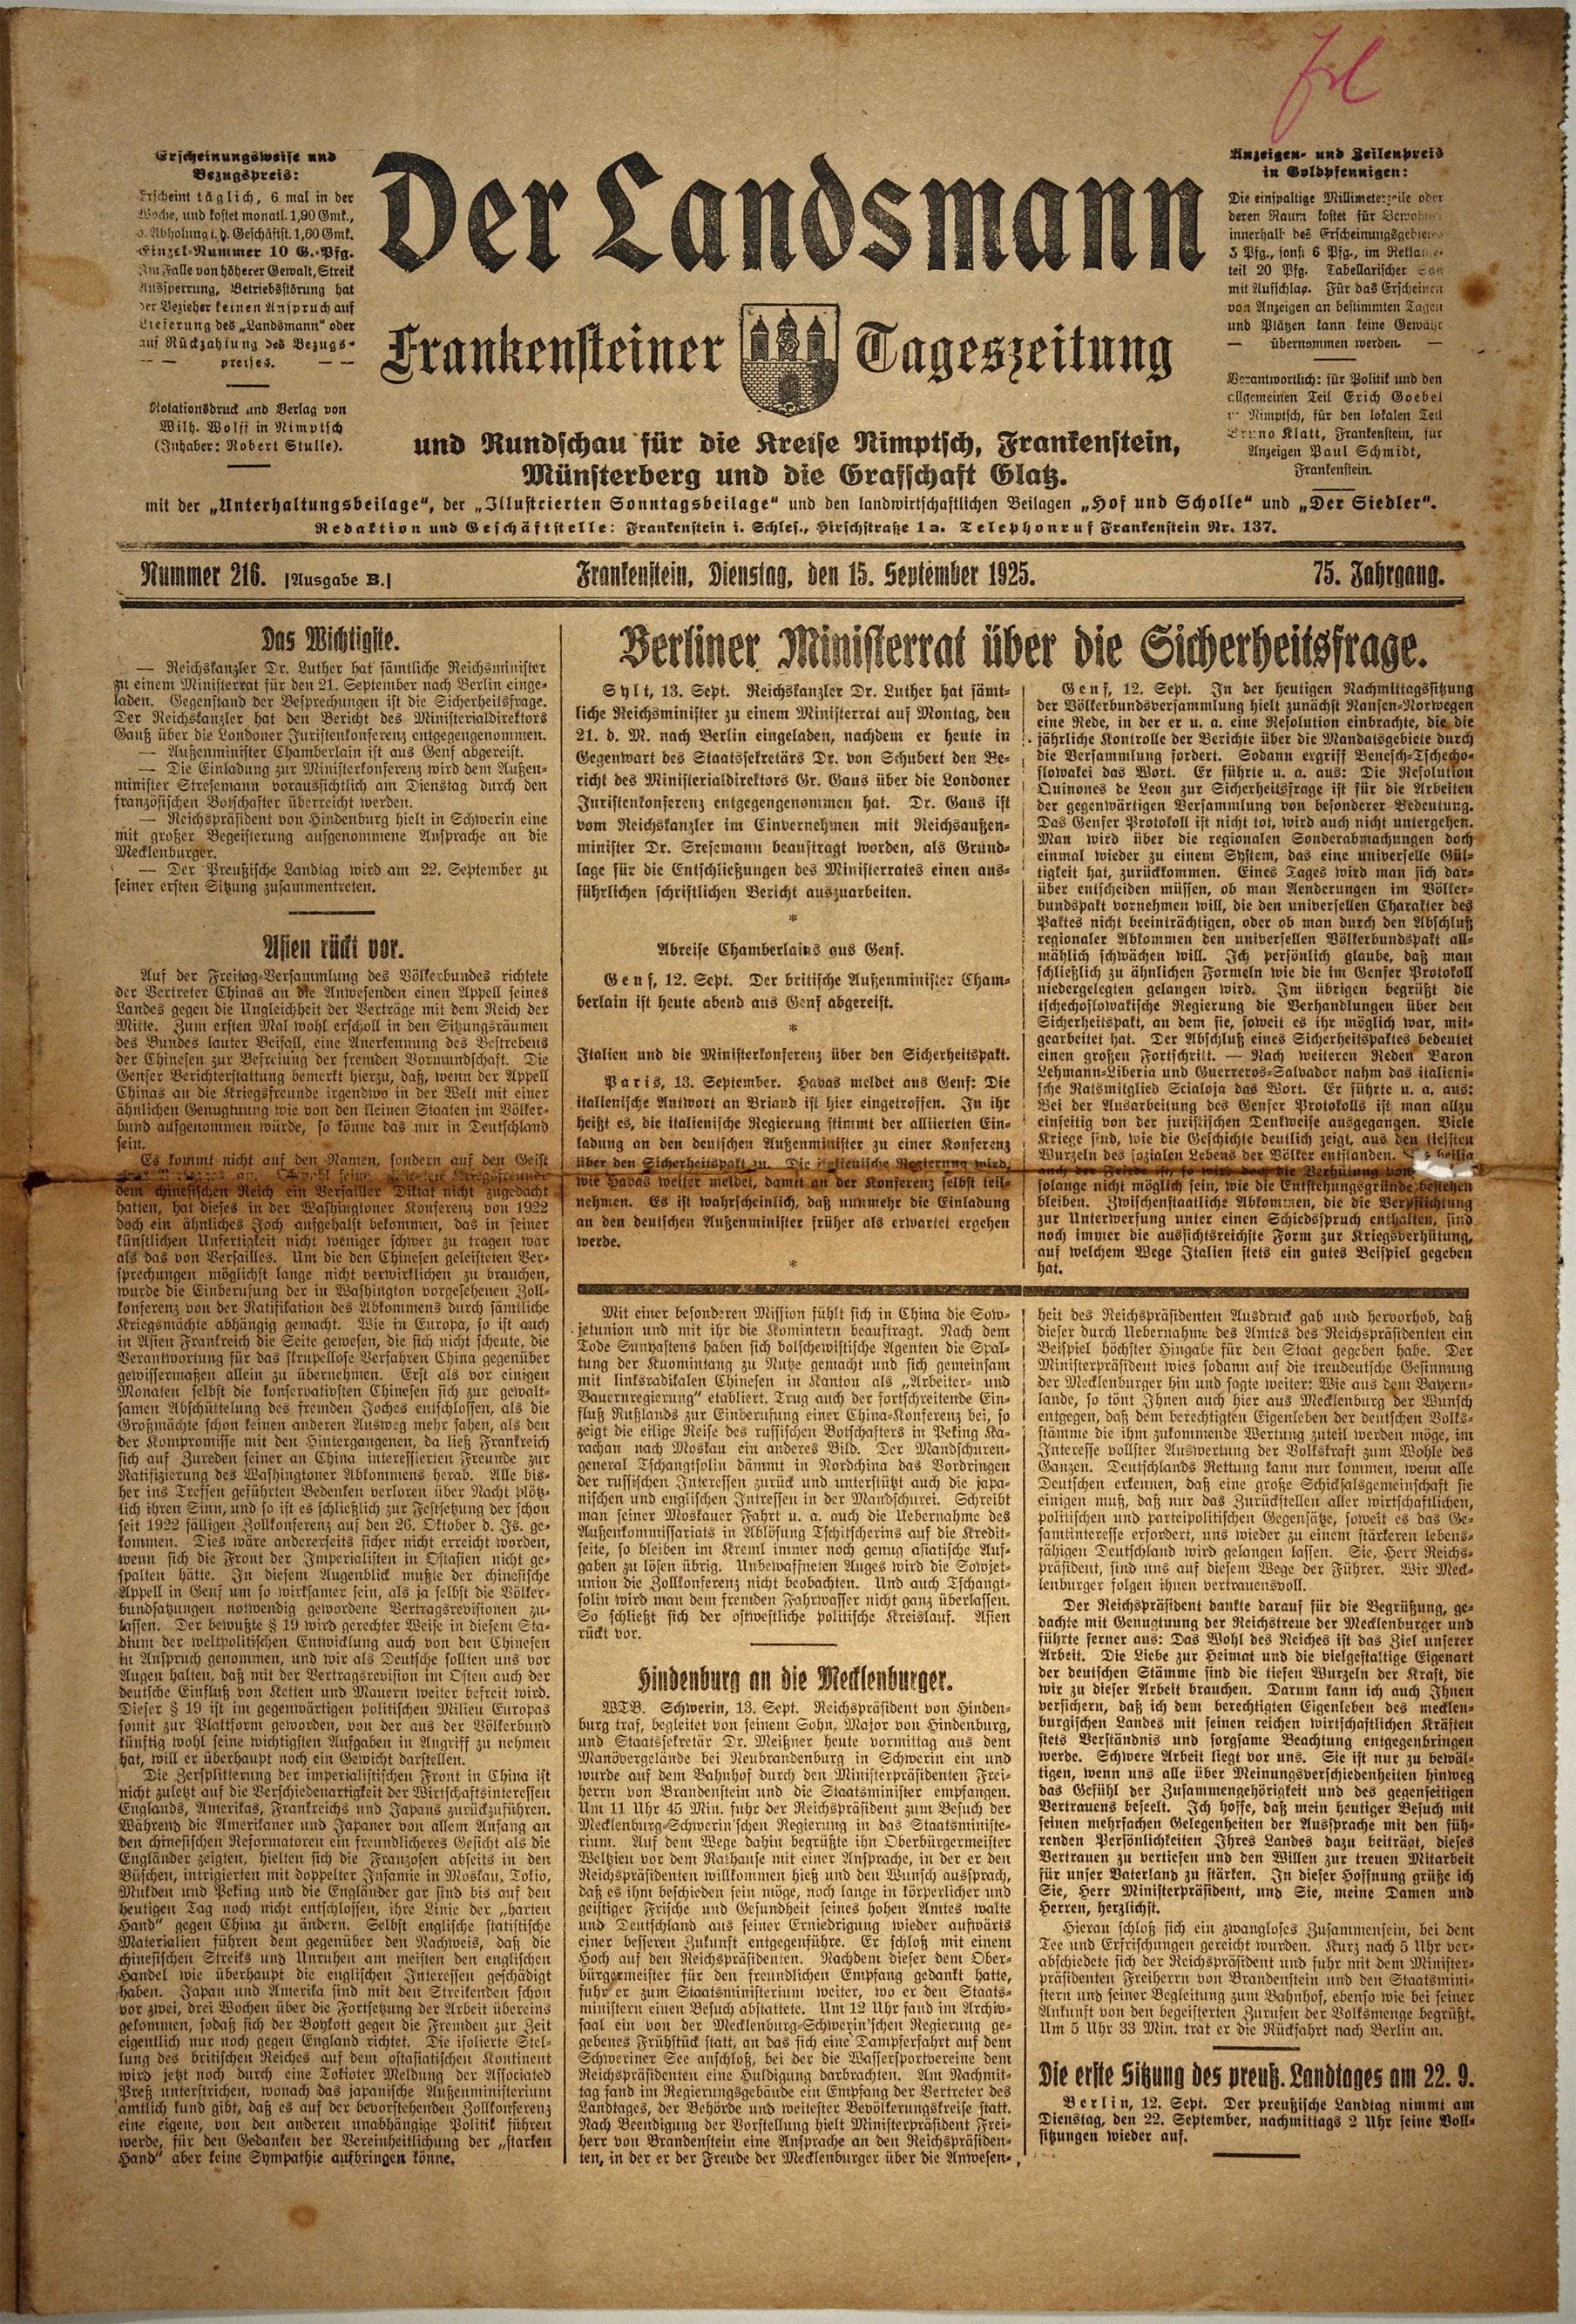 Der Landsmann 15.09.1925 Seite 1